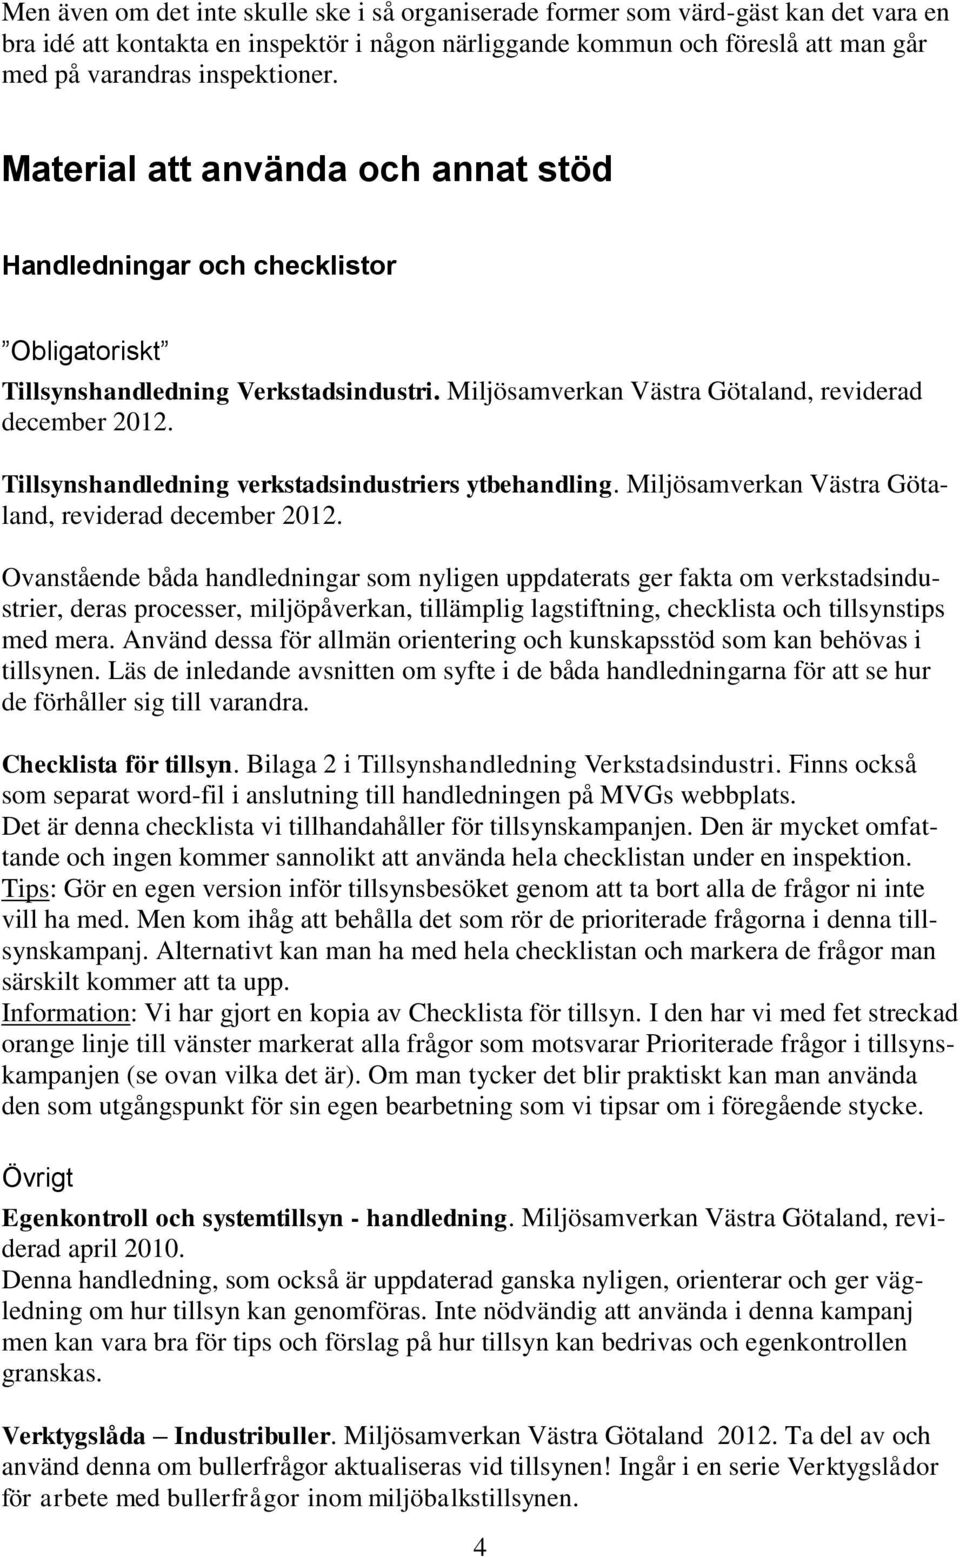 Tillsynshandledning verkstadsindustriers ytbehandling. Miljösamverkan Västra Götaland, reviderad december 2012.